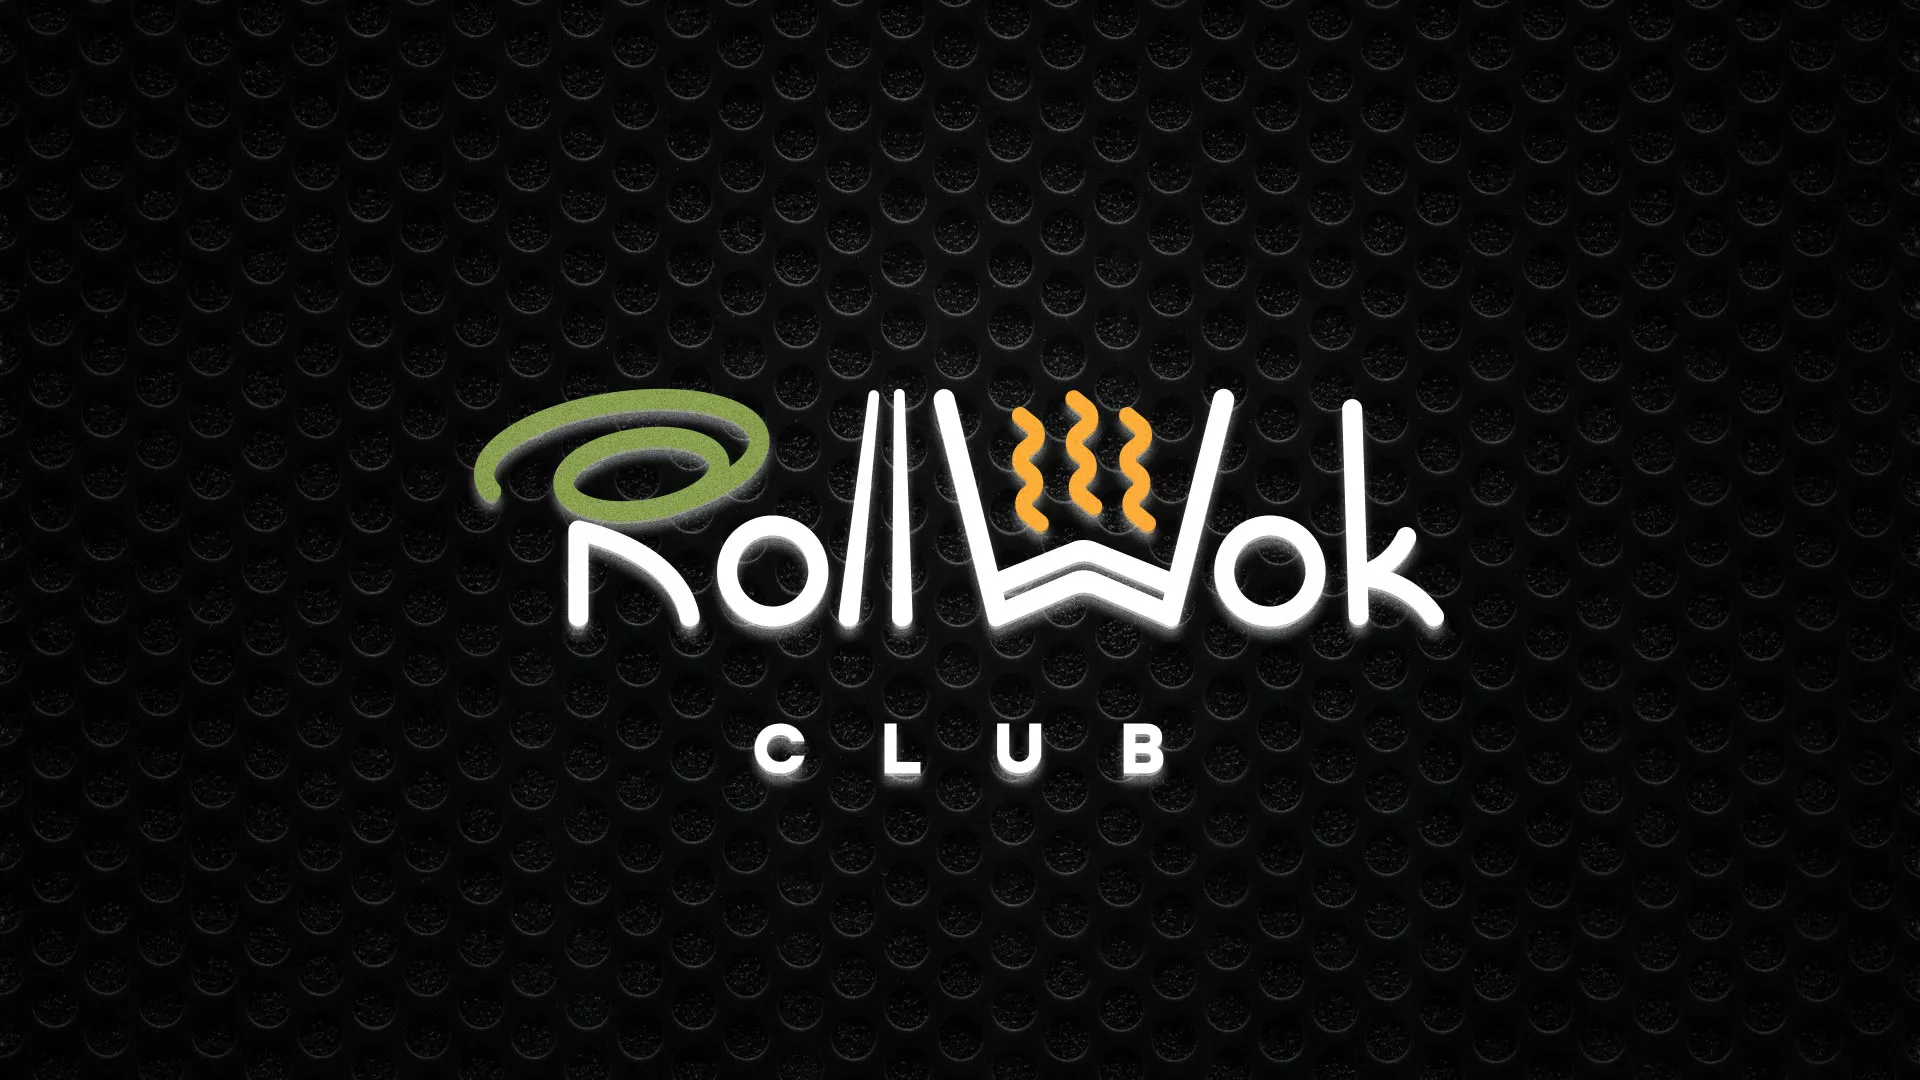 Брендирование торговых точек суши-бара «Roll Wok Club» в Усолье-Сибирском